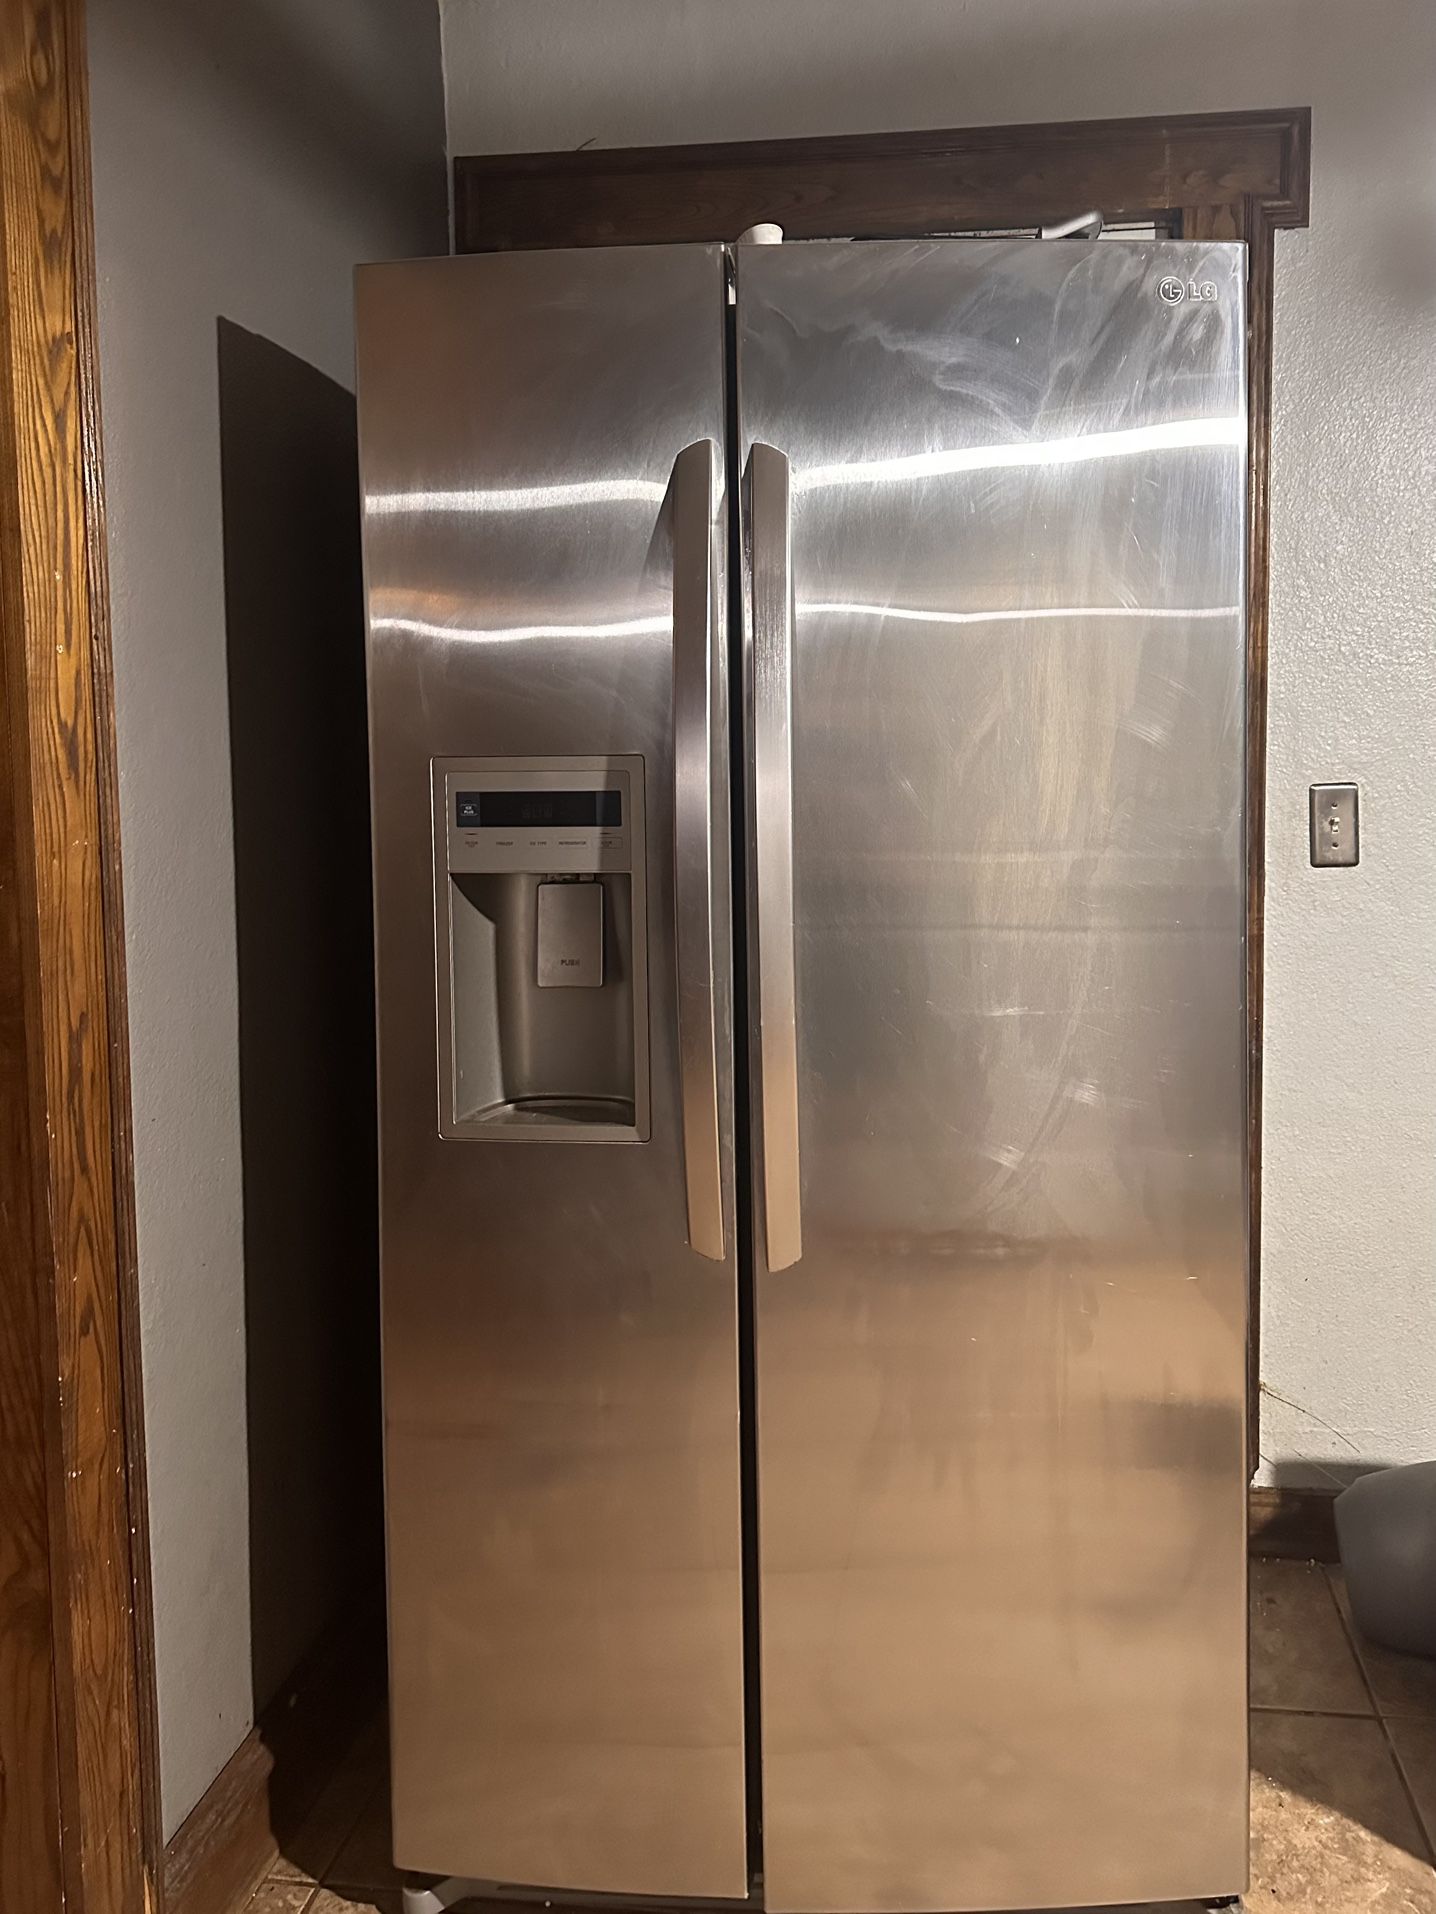 Lg double door Refrigerator $70